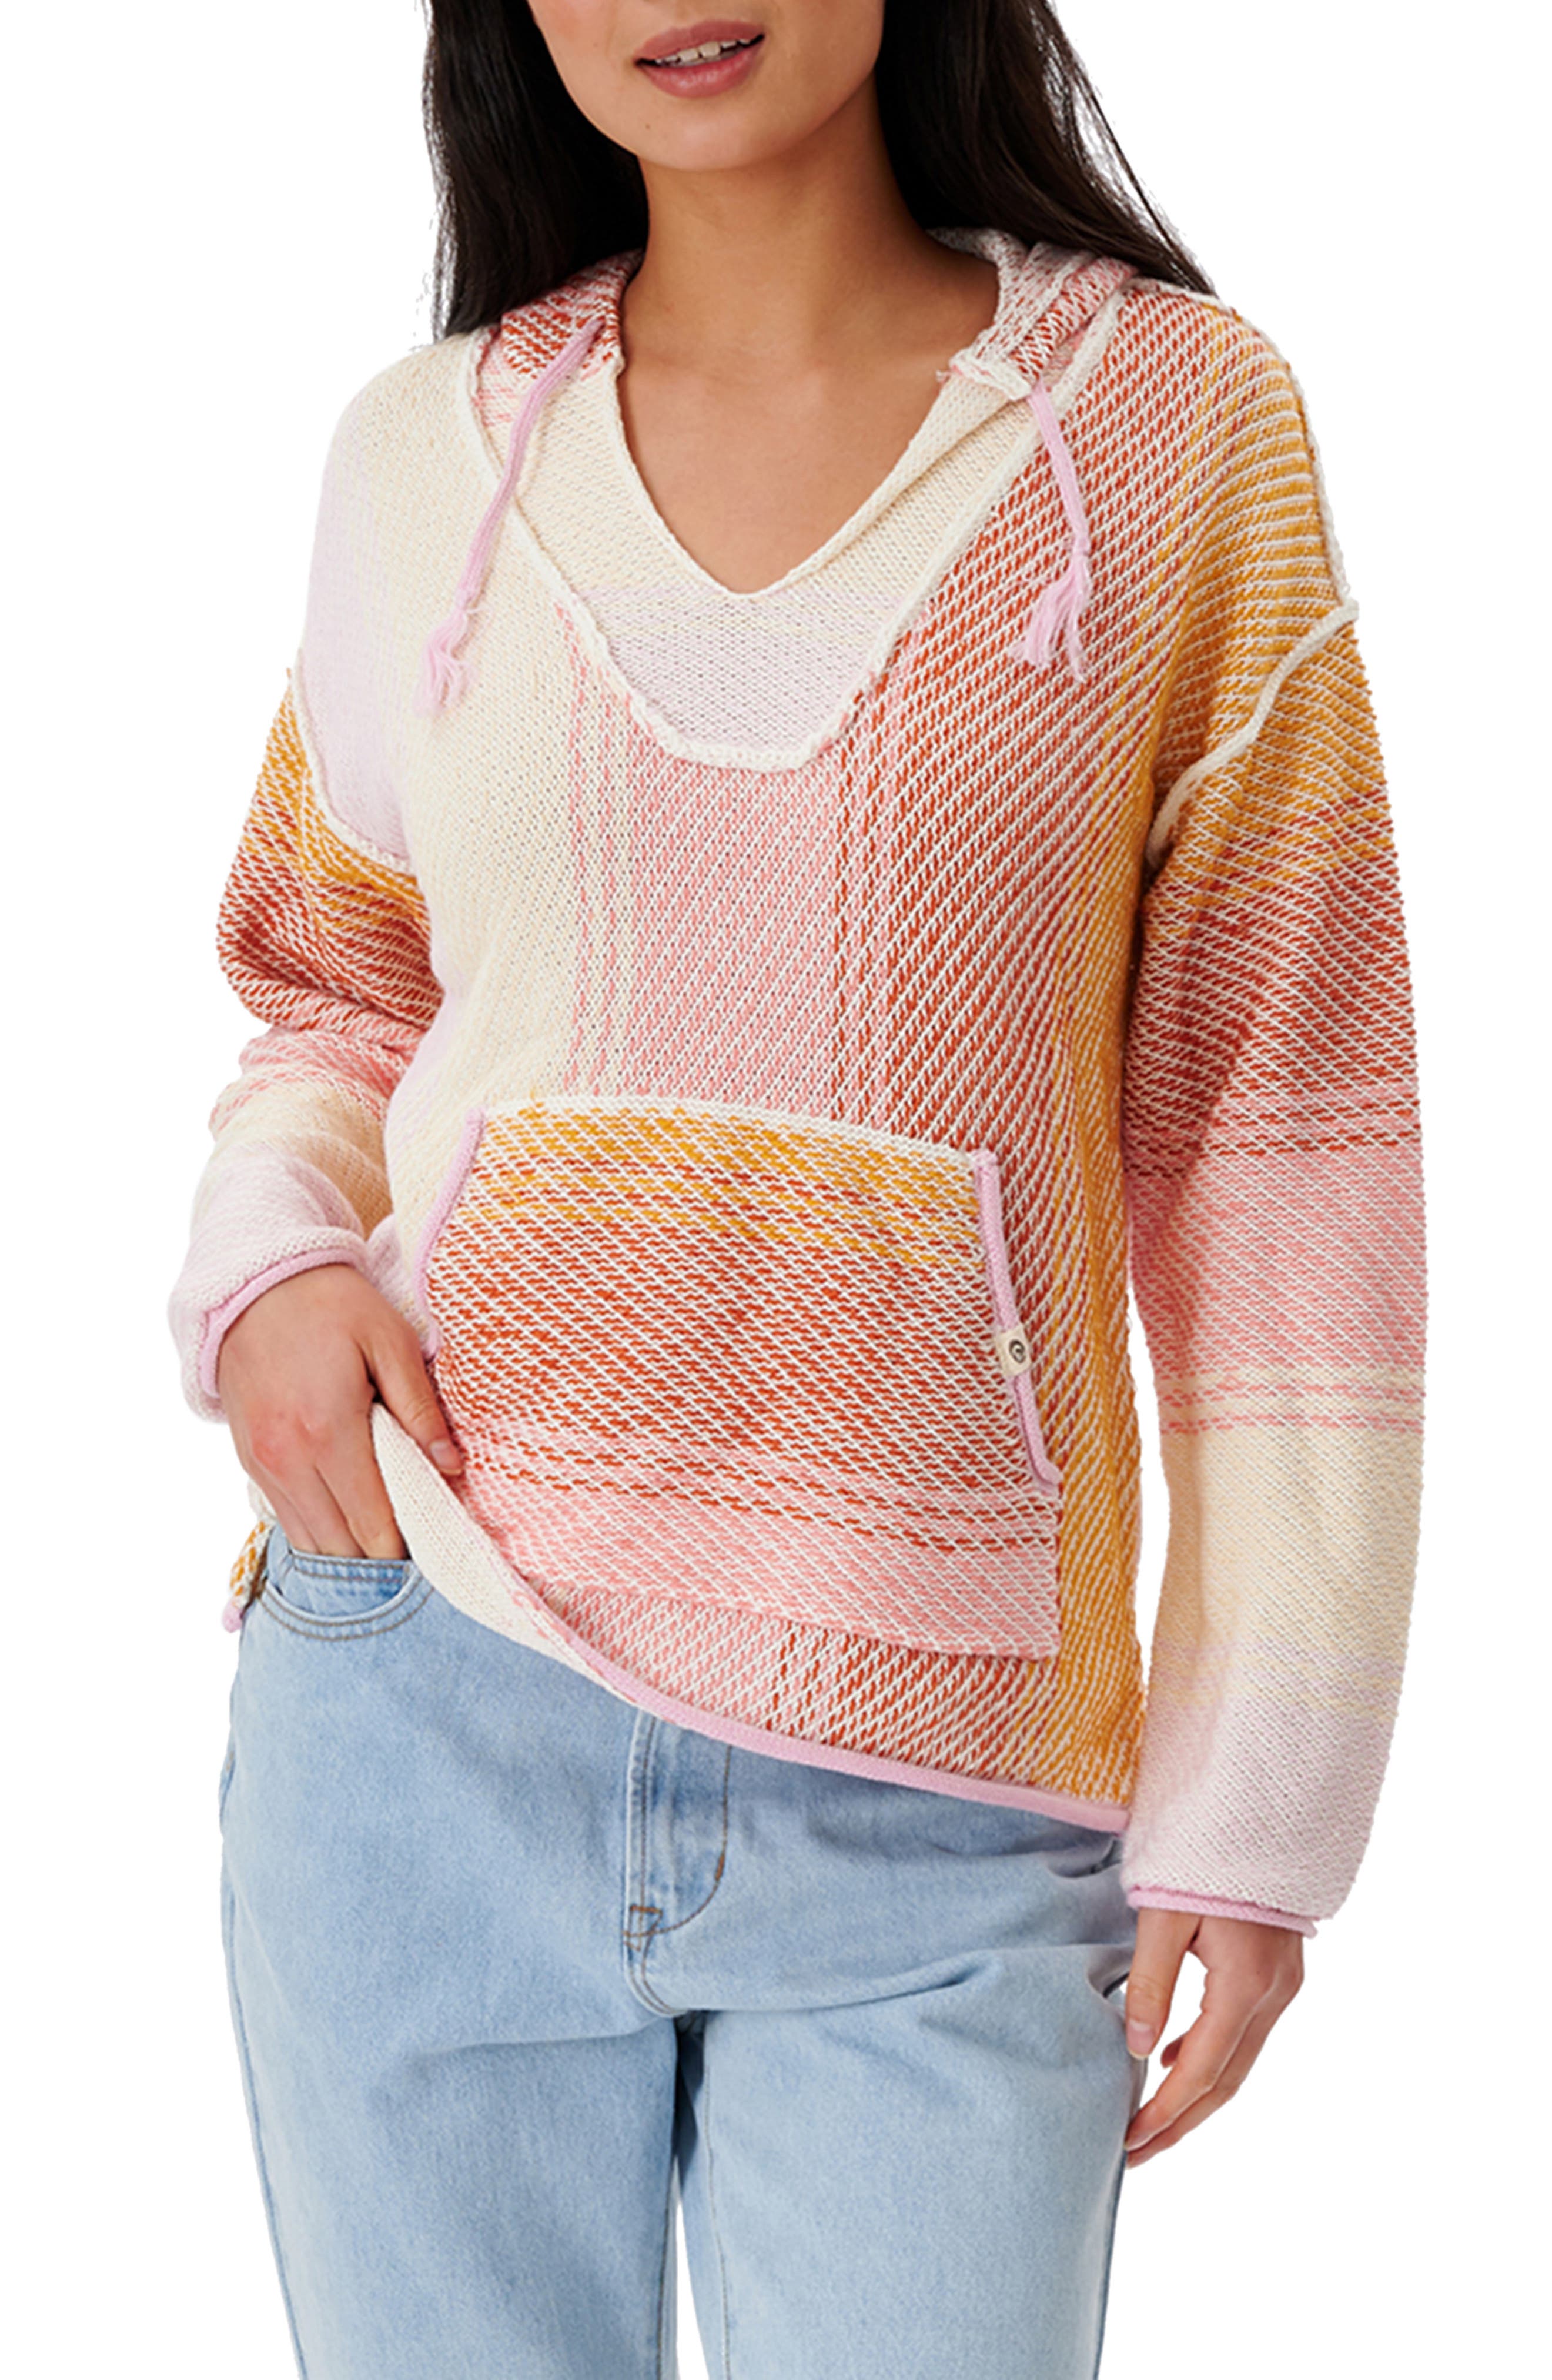 Details about   Hering Junior Women's Contrast Zip Up Sweatshirt 0442 